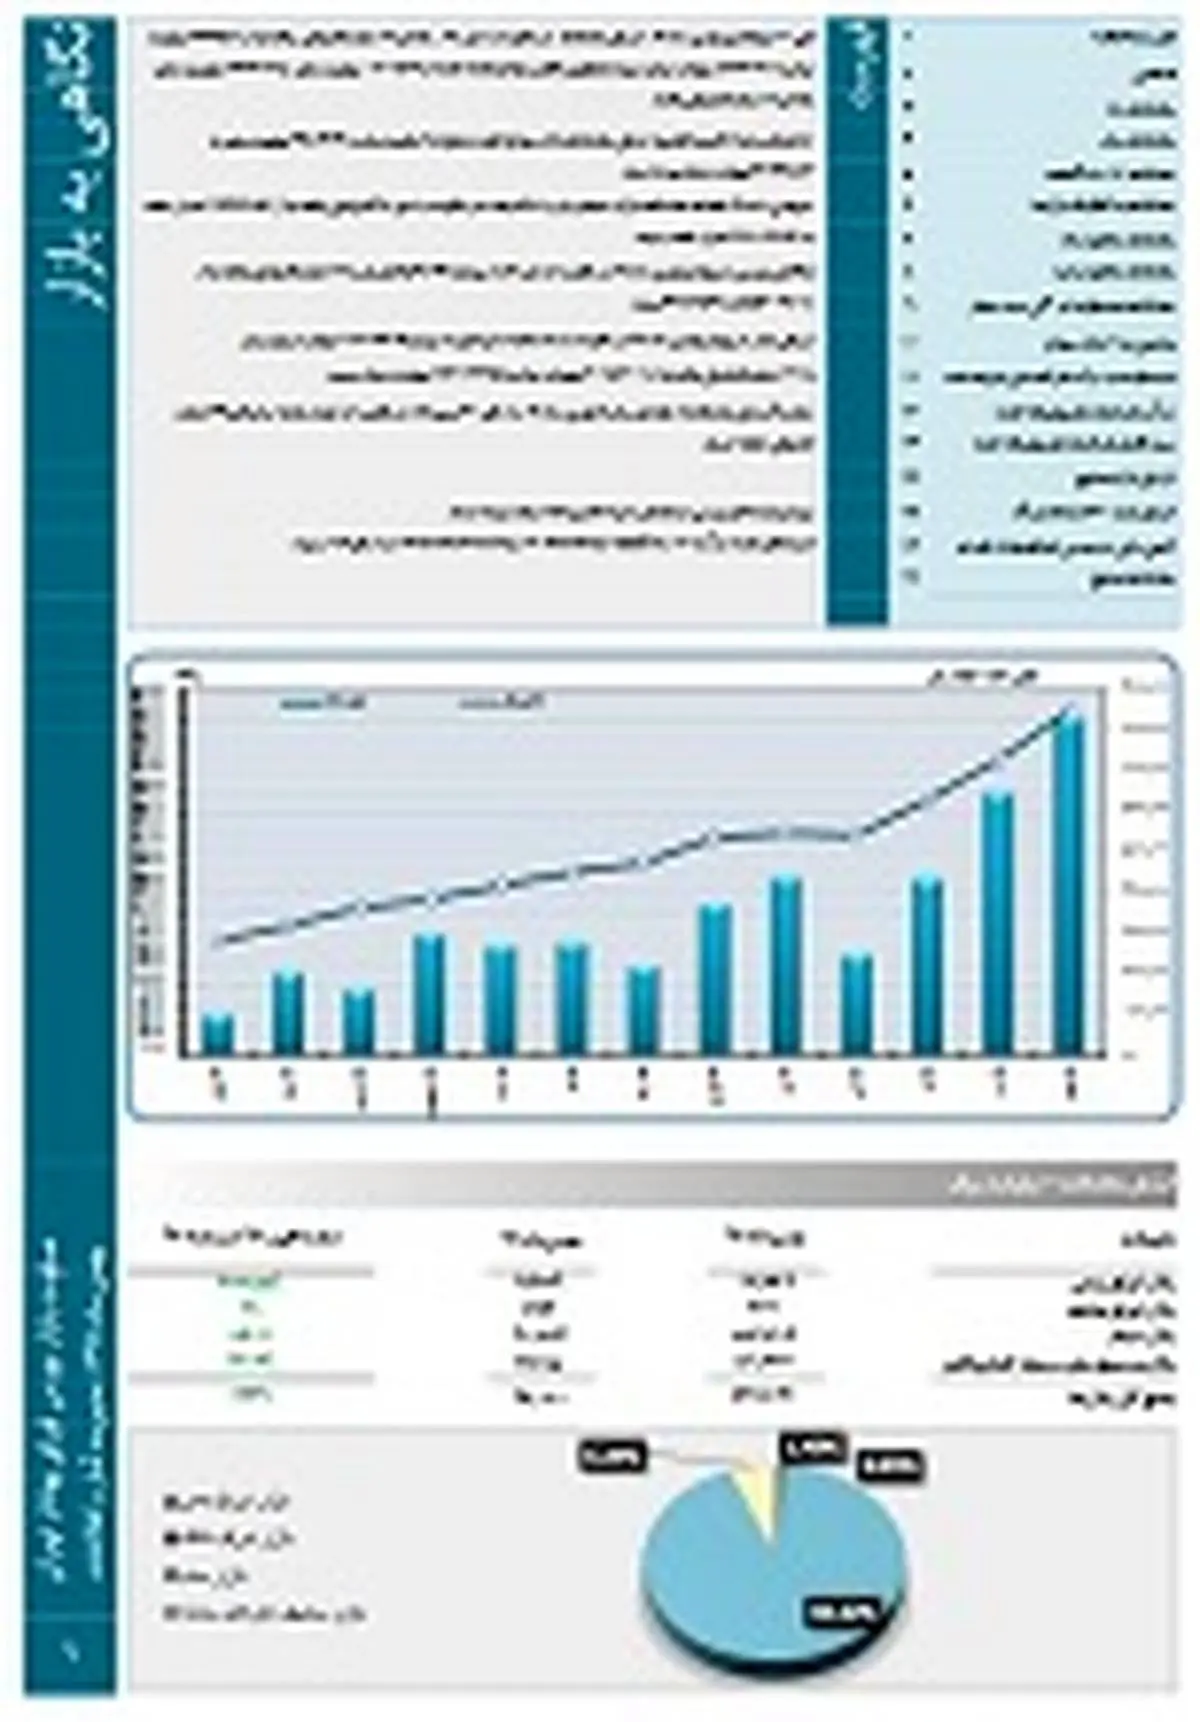 افزایش 190 درصدی ارزش بازار در بهمن 98 